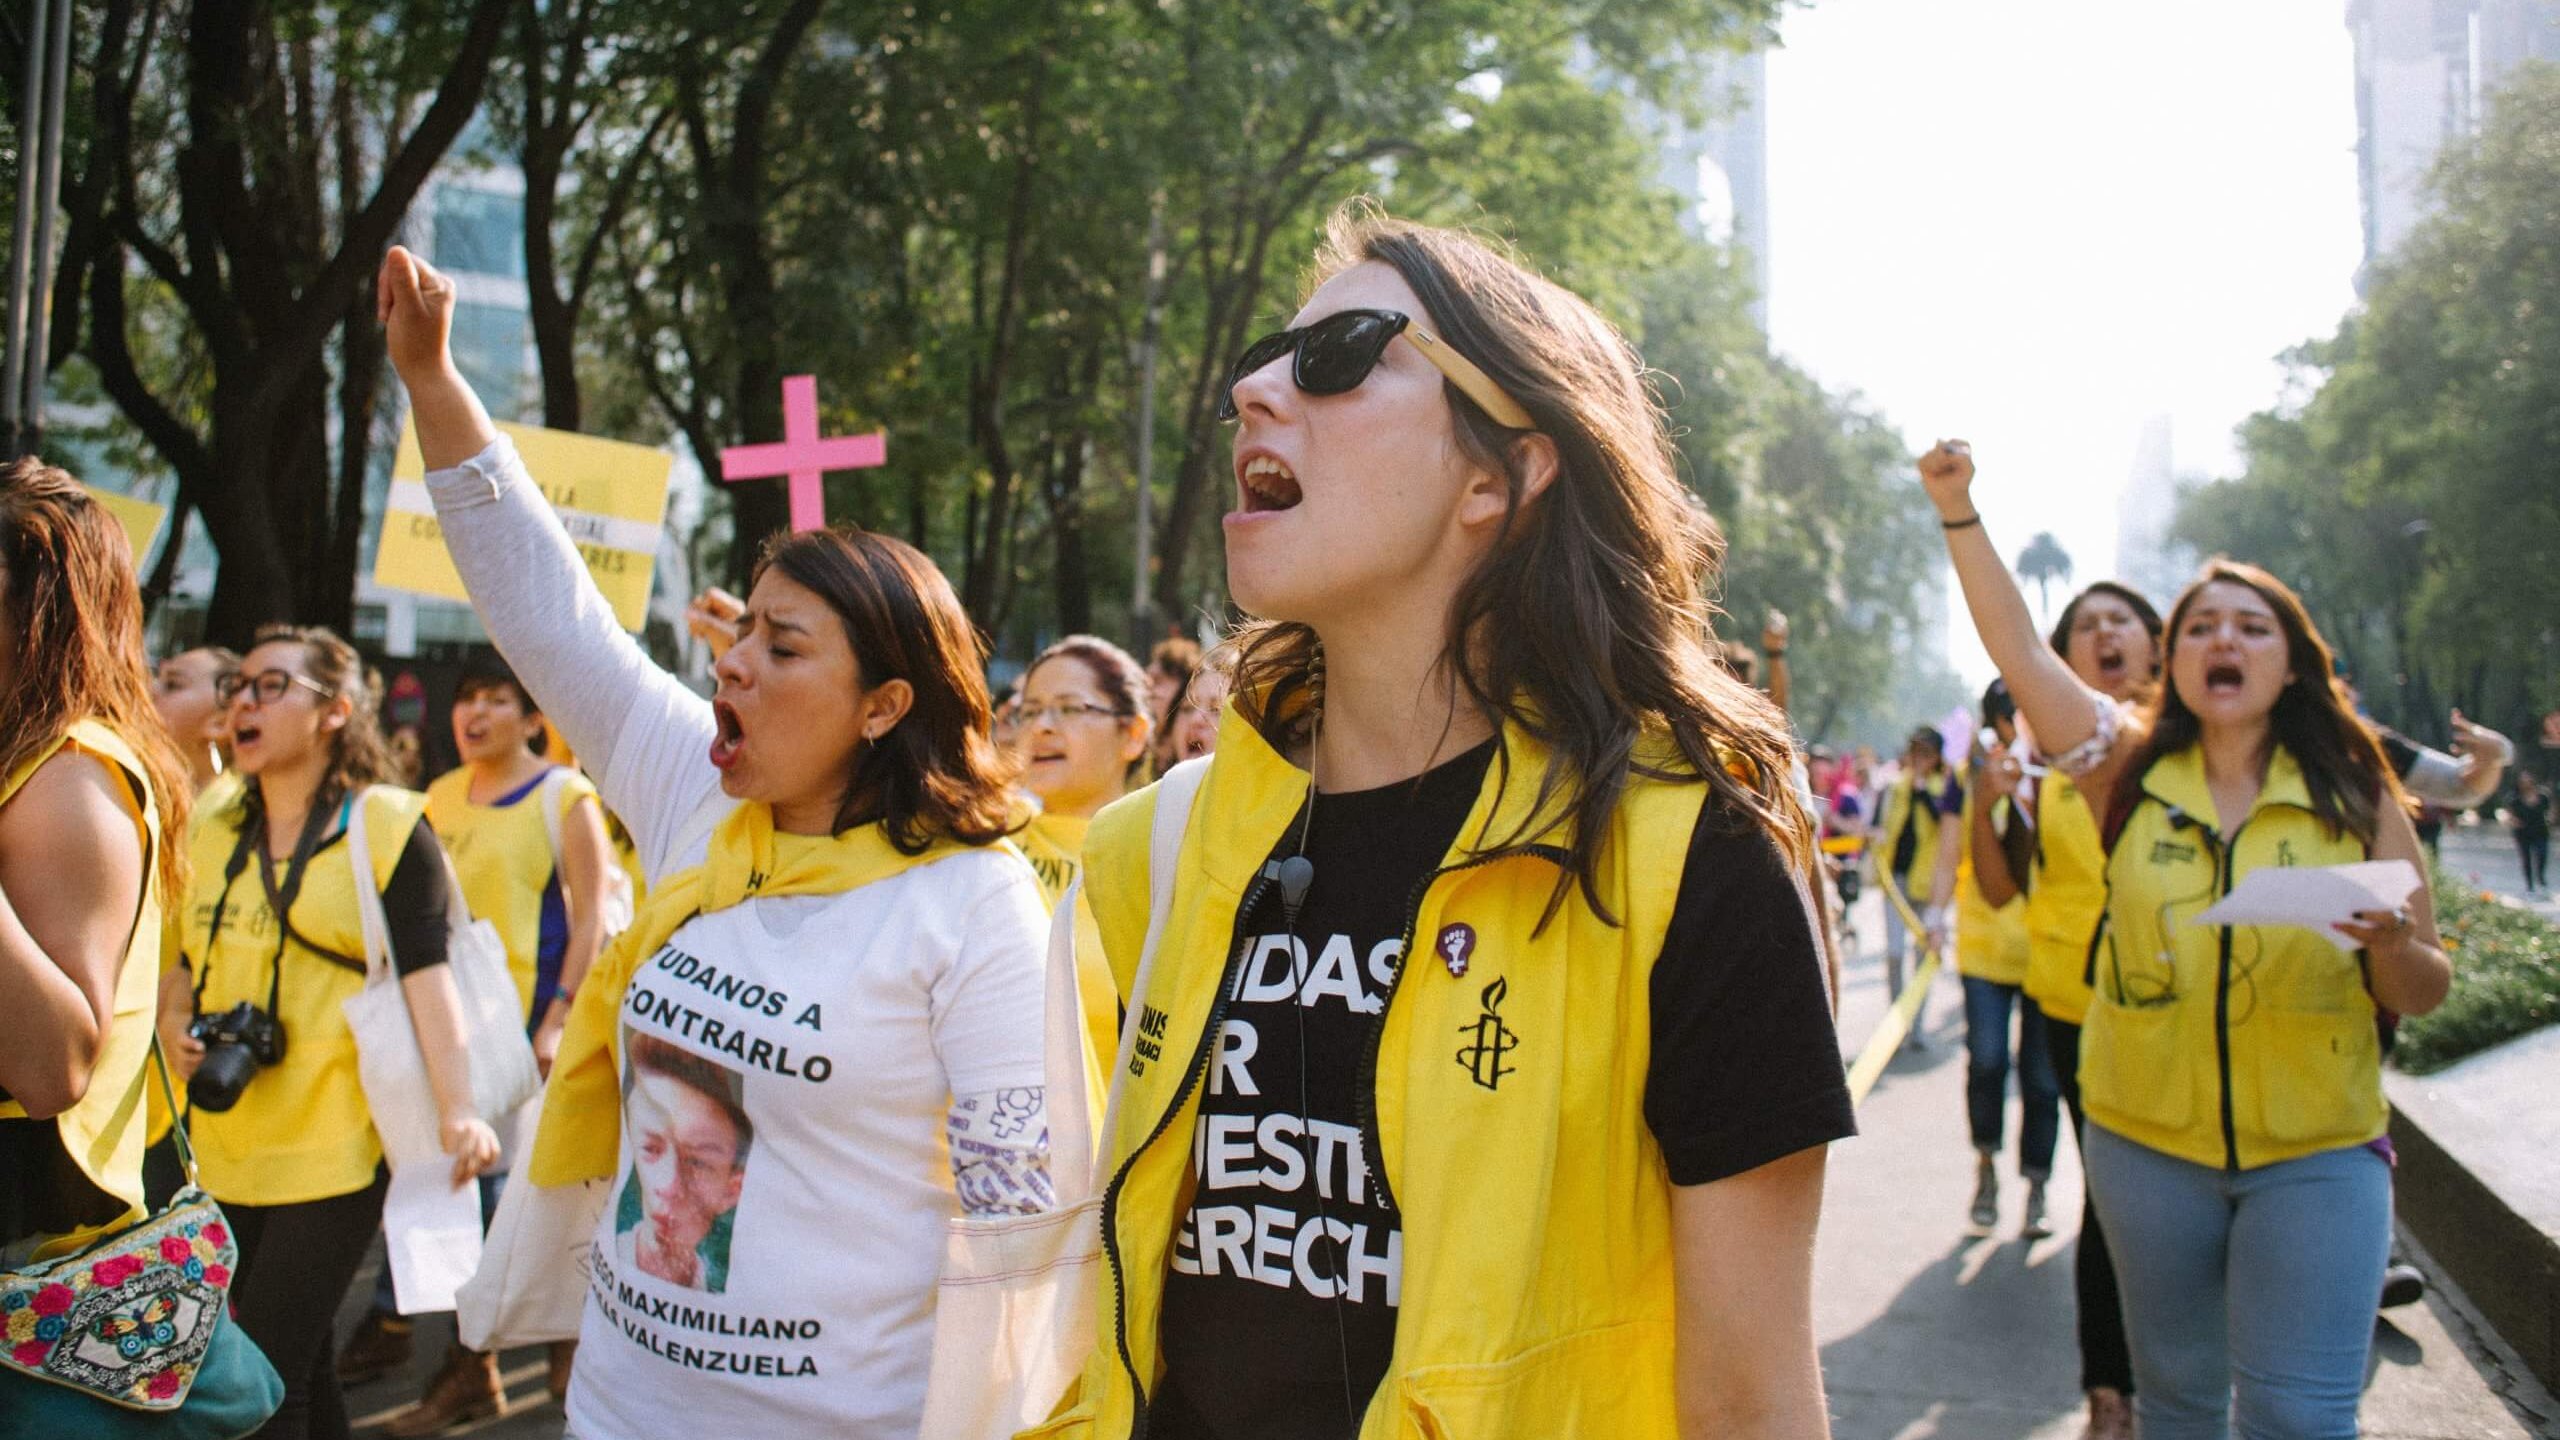 La grève des femmes a eu lieu le 8 mars à Mexico pour exiger la fin de la violence contre les femmes.